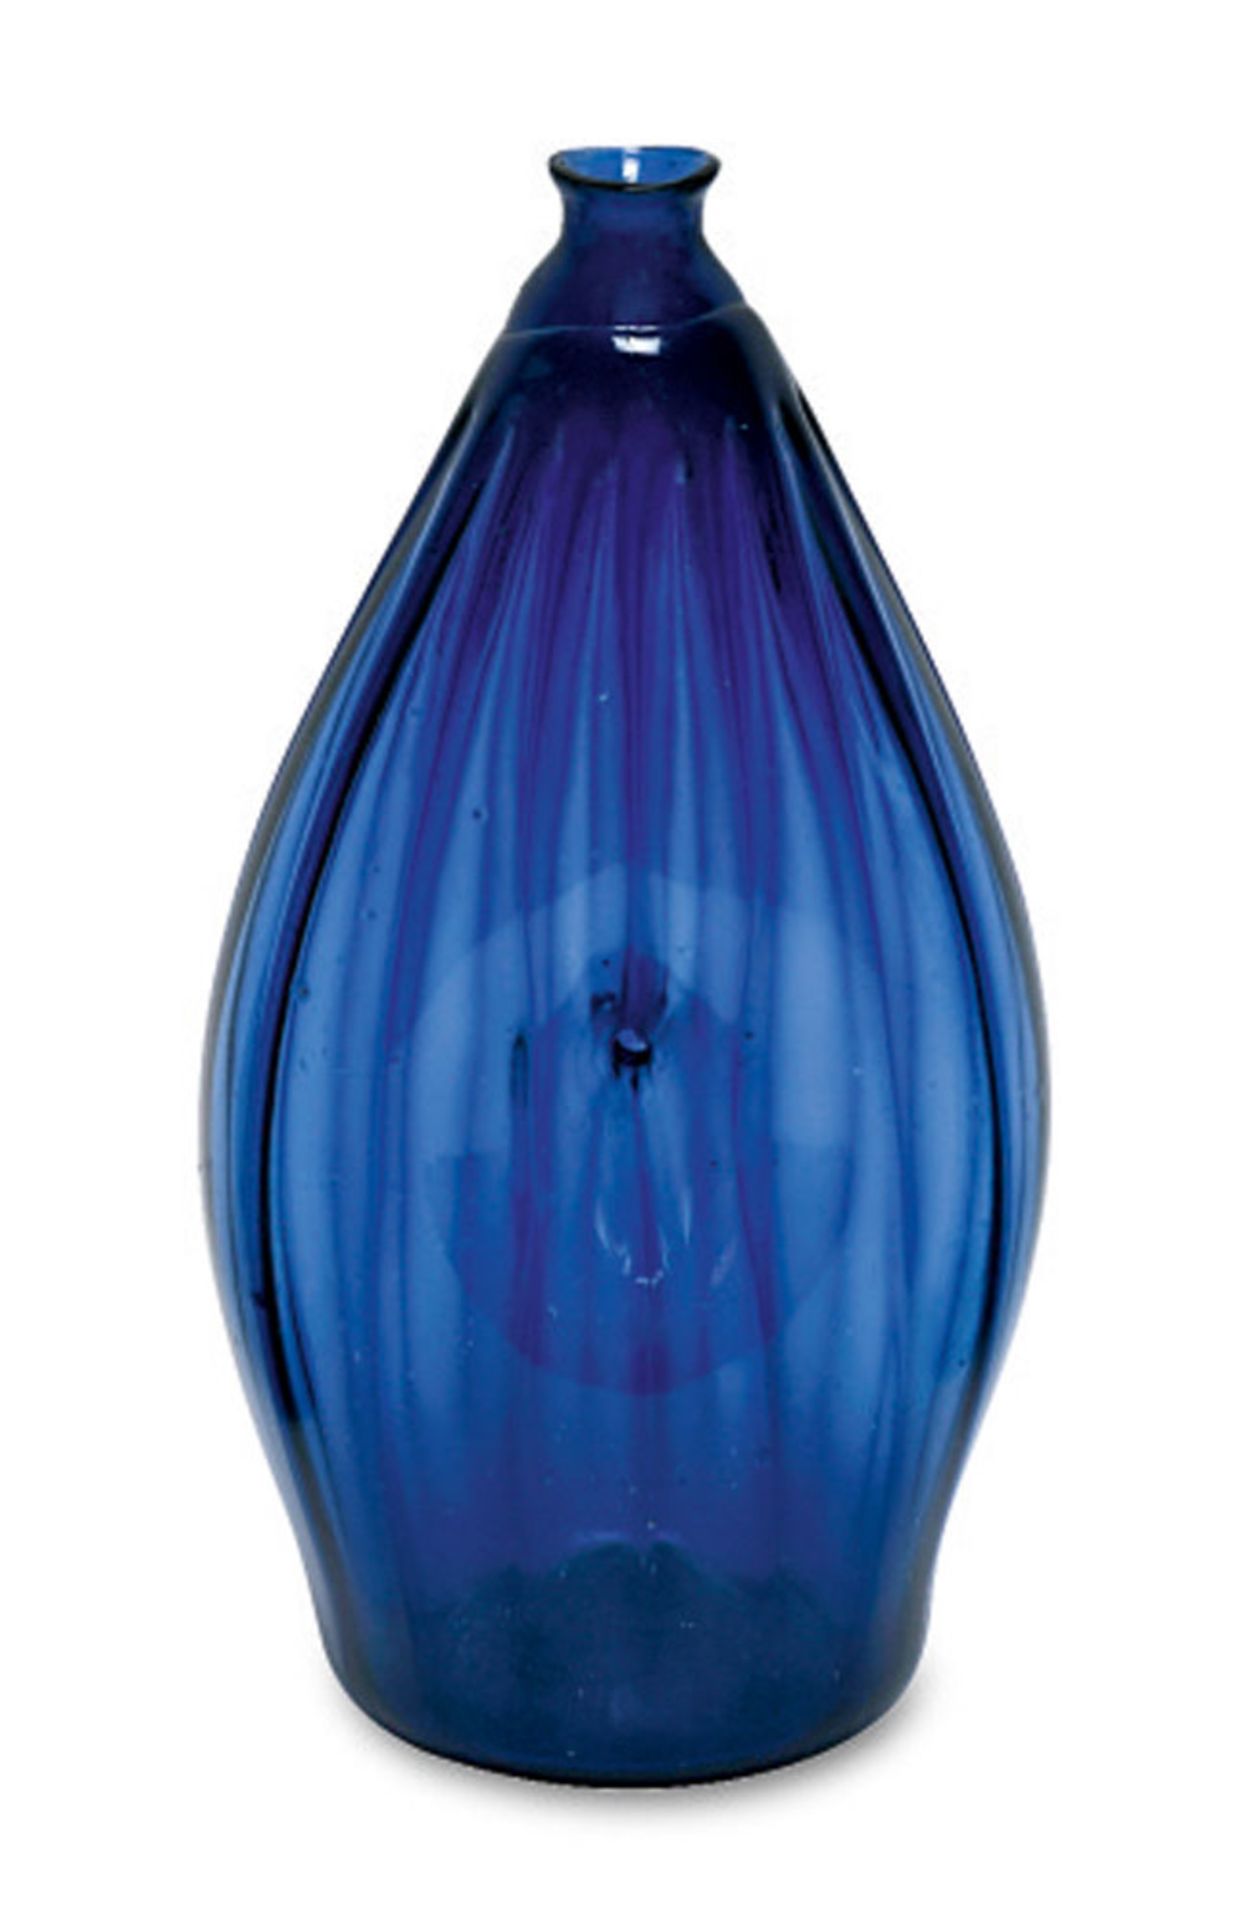 NabelflascheAlpenländisch, 18. Jh. Kobaltblaues Glas mit hochgestochenem Boden, Abriss und 16-fach